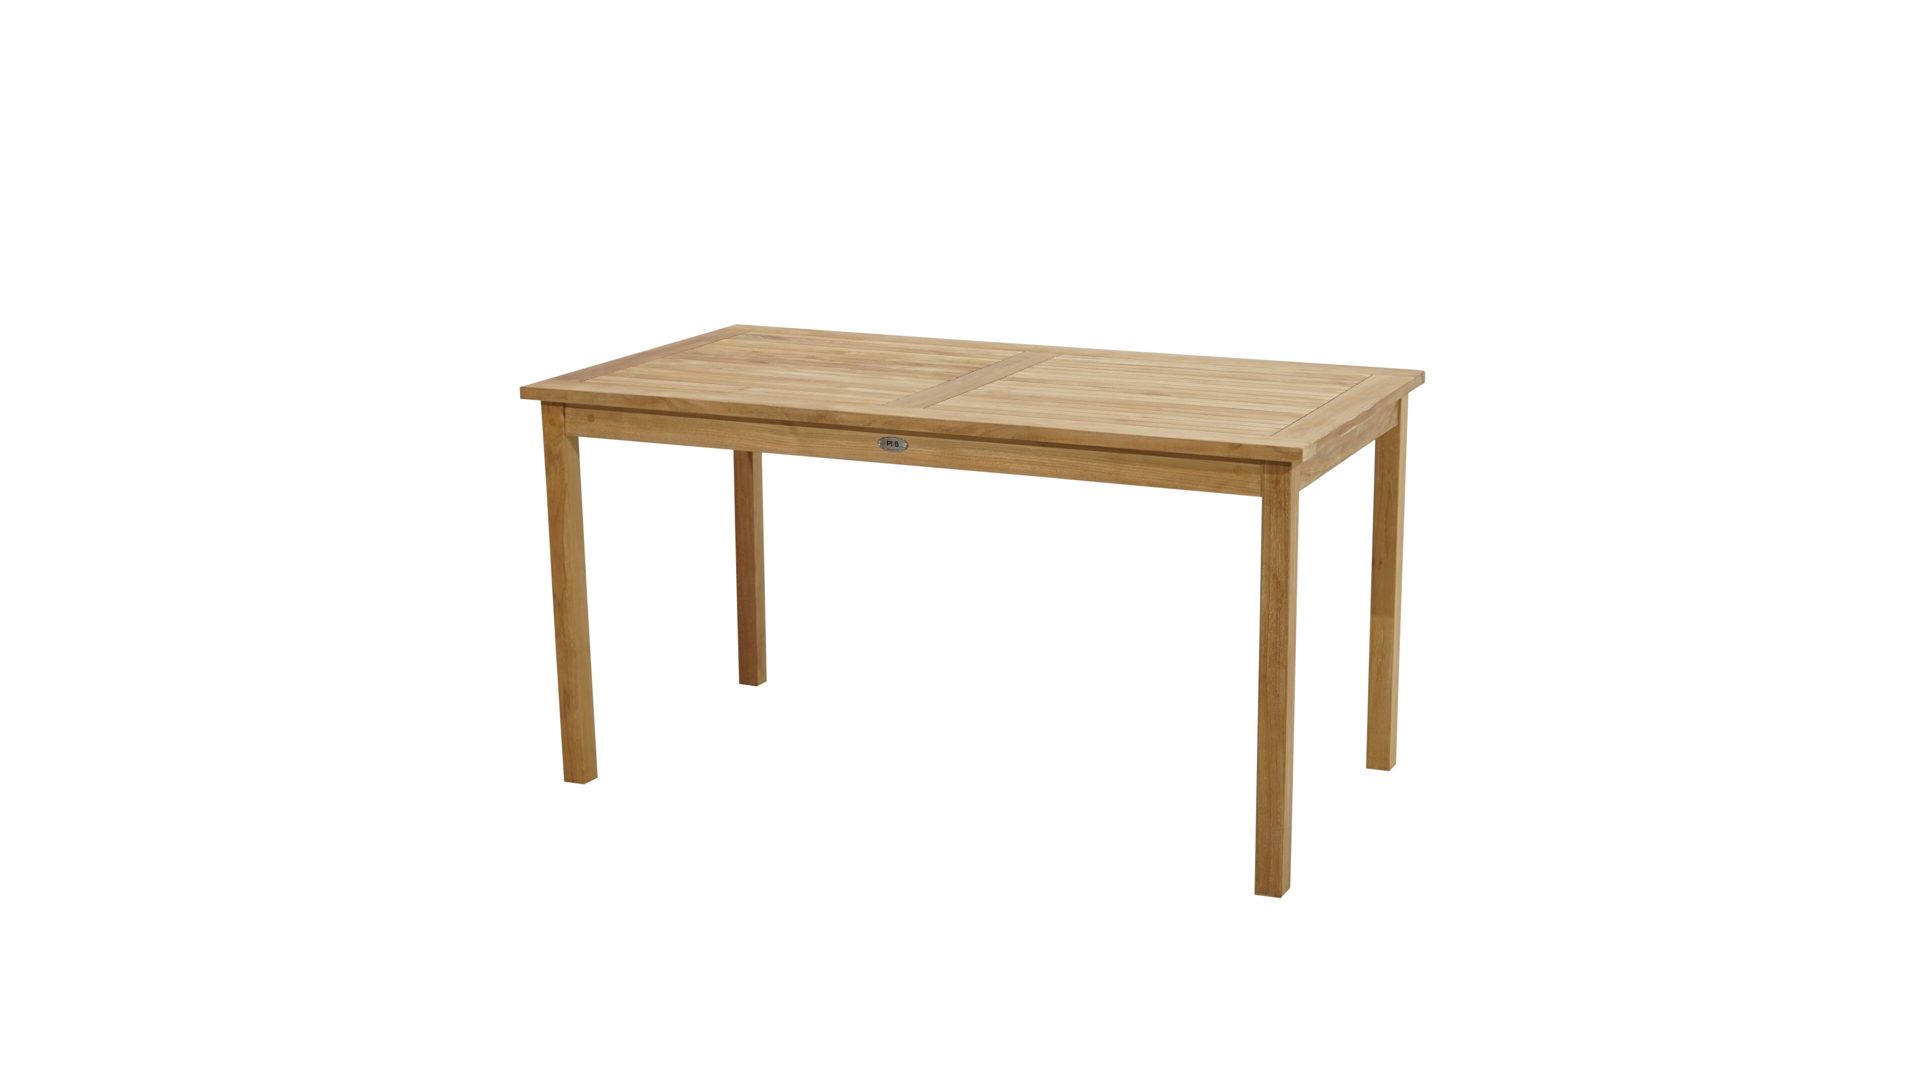 Gartentisch Ploß aus Holz in Holzfarben Ploß® Tisch Memphis als Gartenmöbel ca. 150 x 80 cm - Teakholz